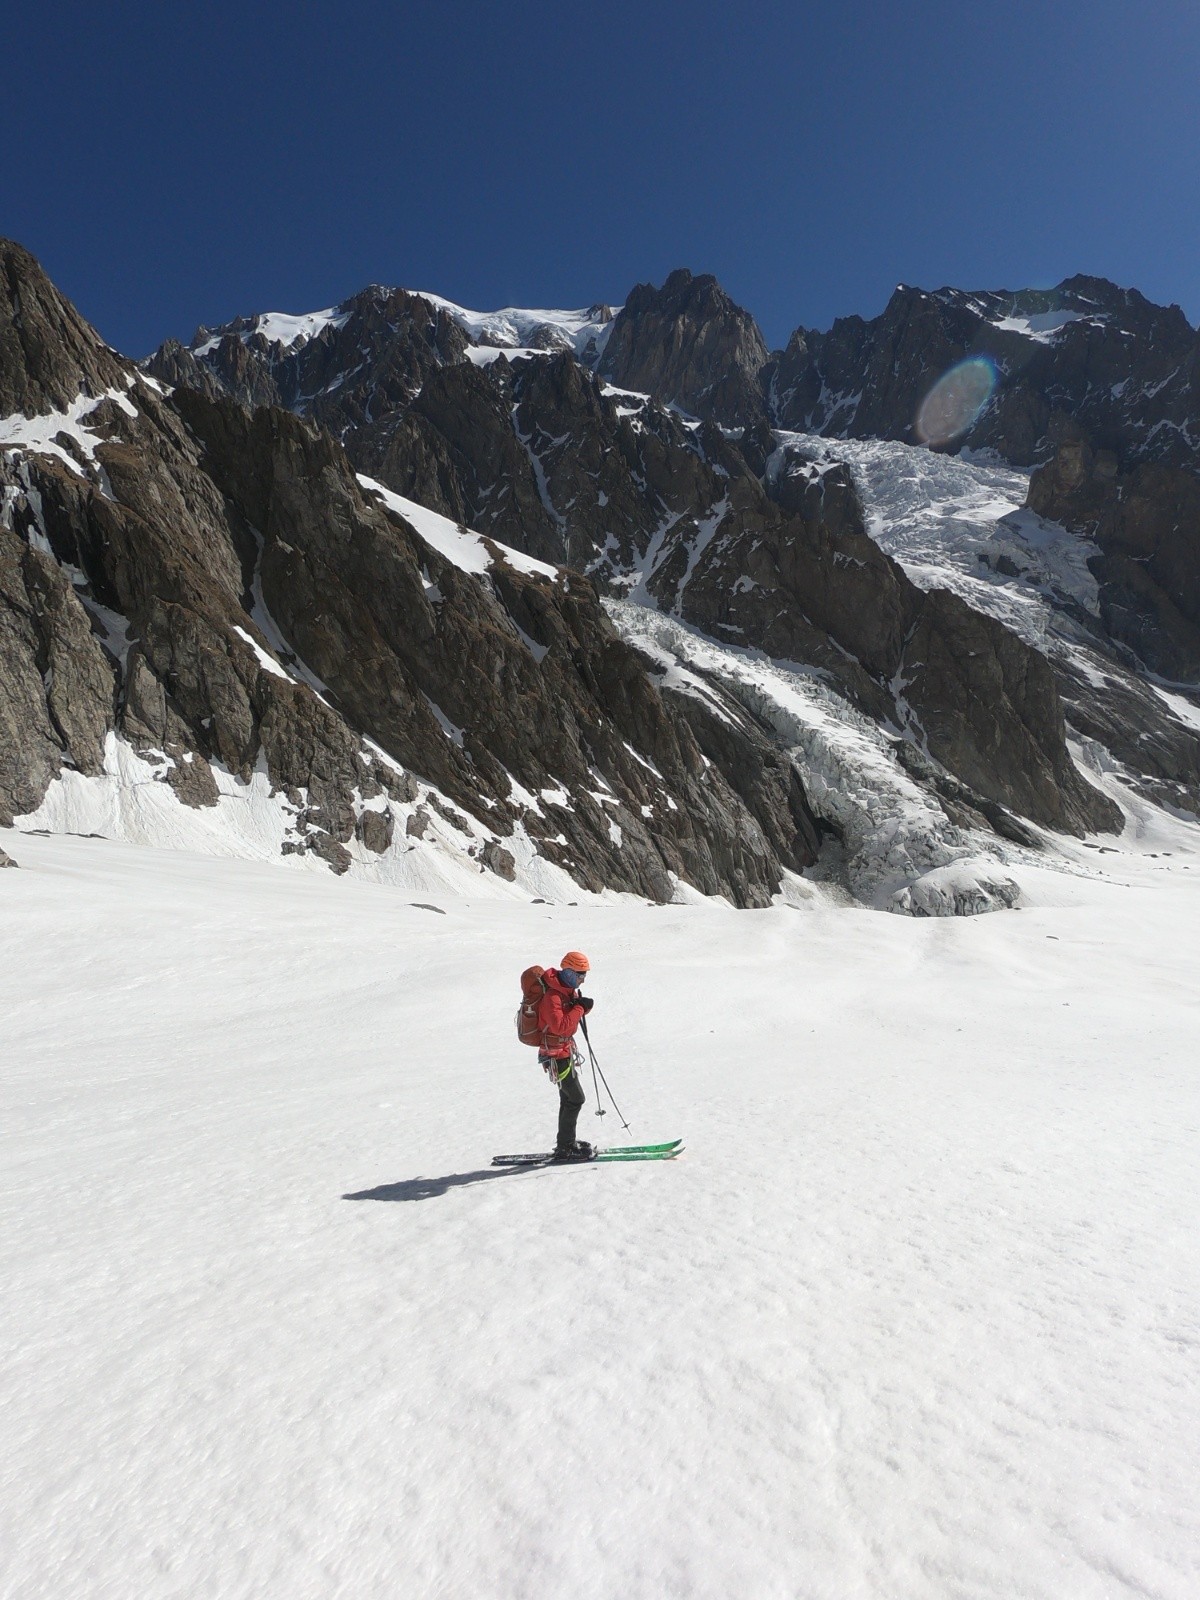 on se sent petits ici bas sous les glaciers plongeants du sommet du Mont-Blanc